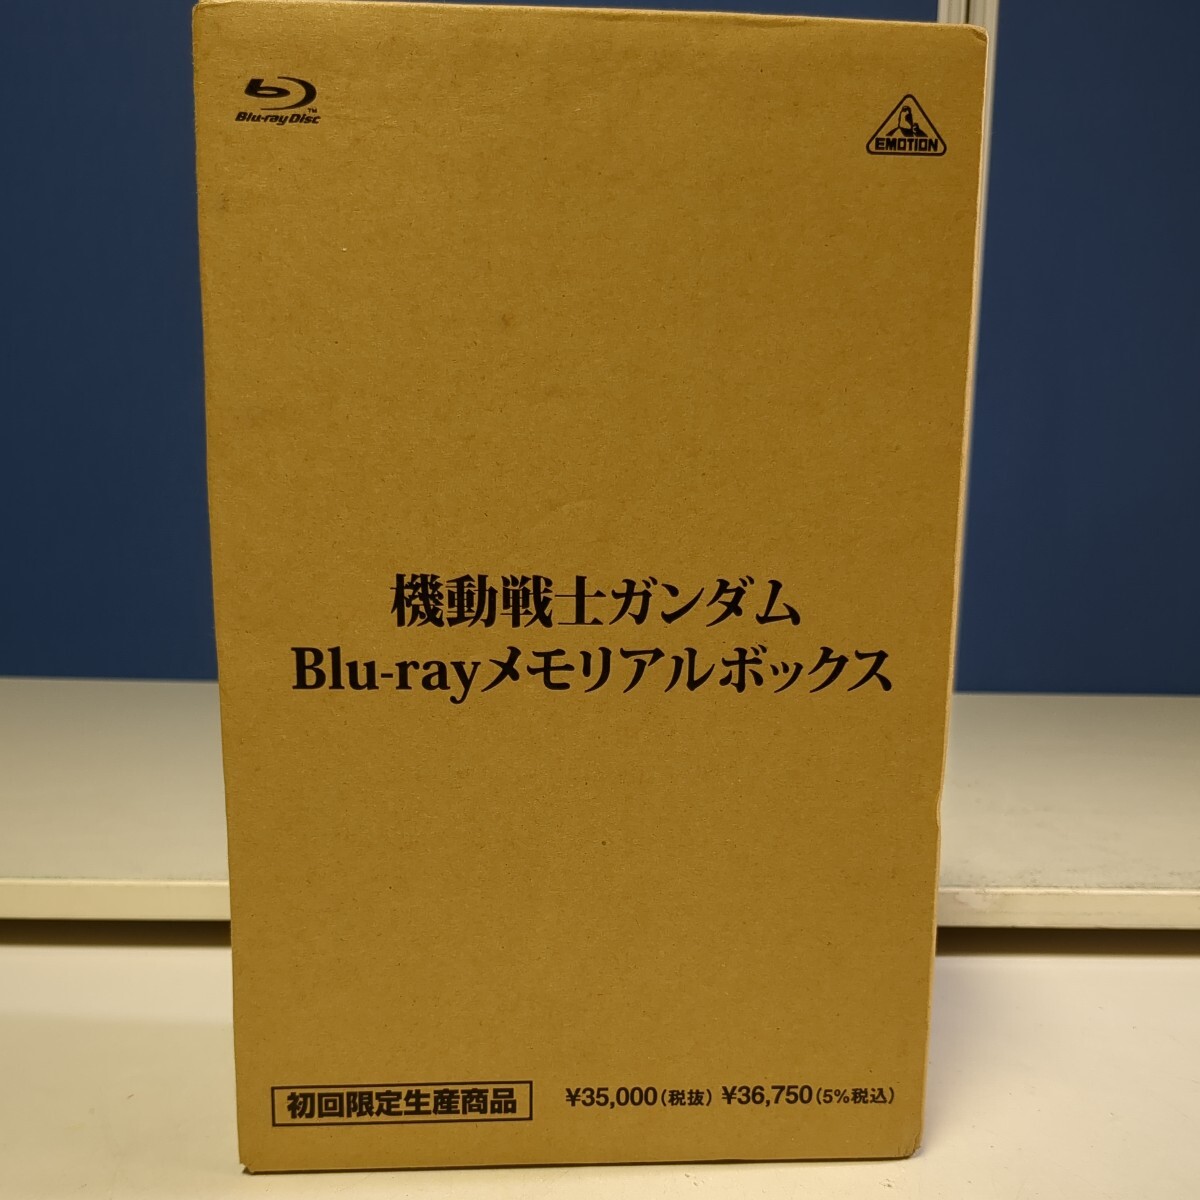 4264 機動戦士ガンダム Blu-ray メモリアルボックス 初回限定生産 新品 未開封 ブルーレイ の画像2